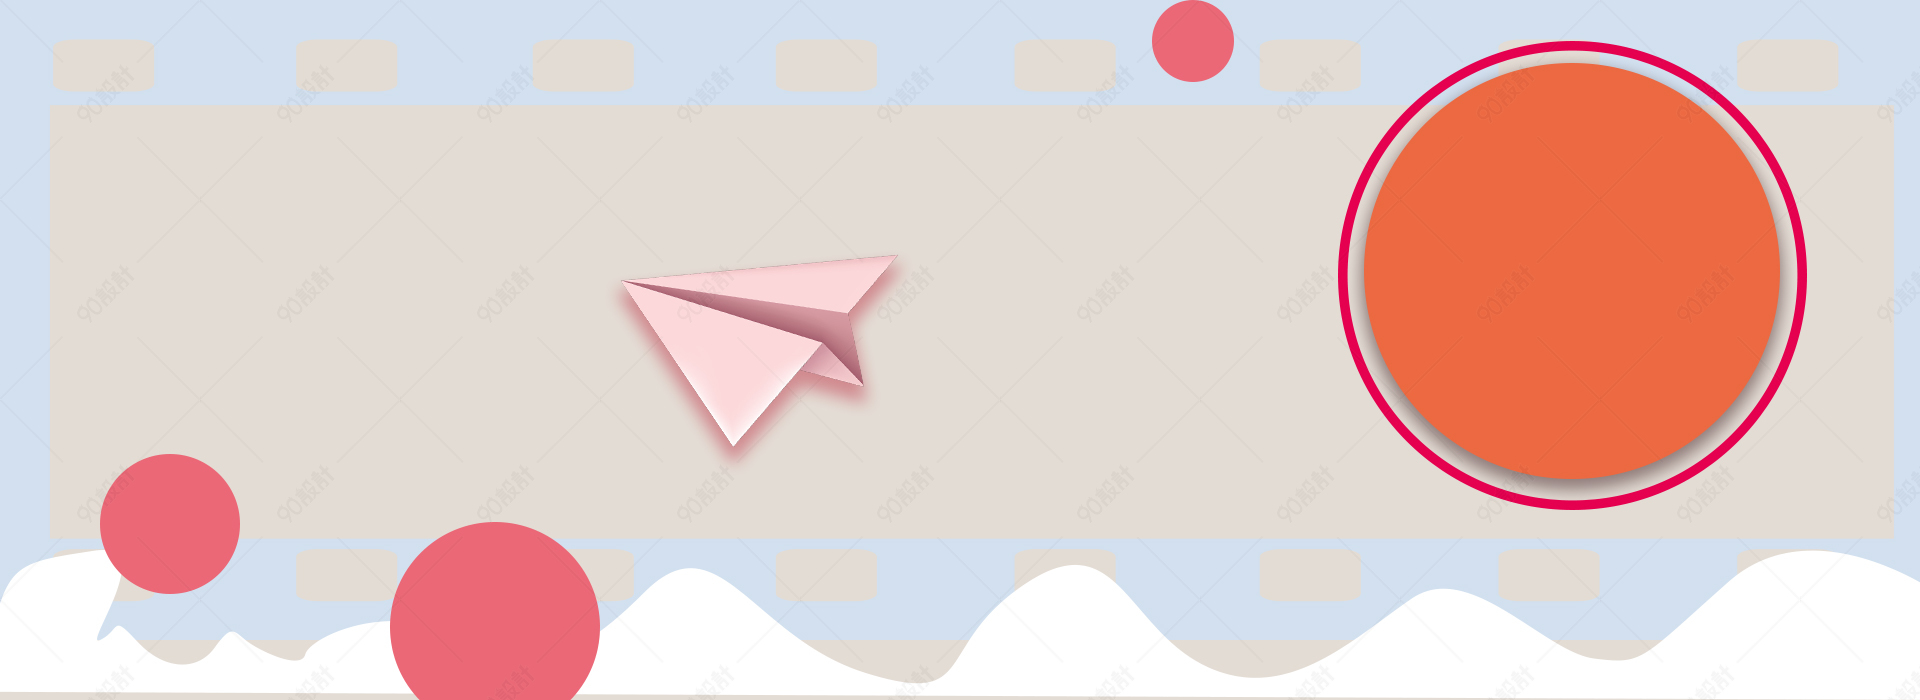 [跟纸飞机一样的聊天软件]有一款聊天软件是一个纸飞机的app叫什么